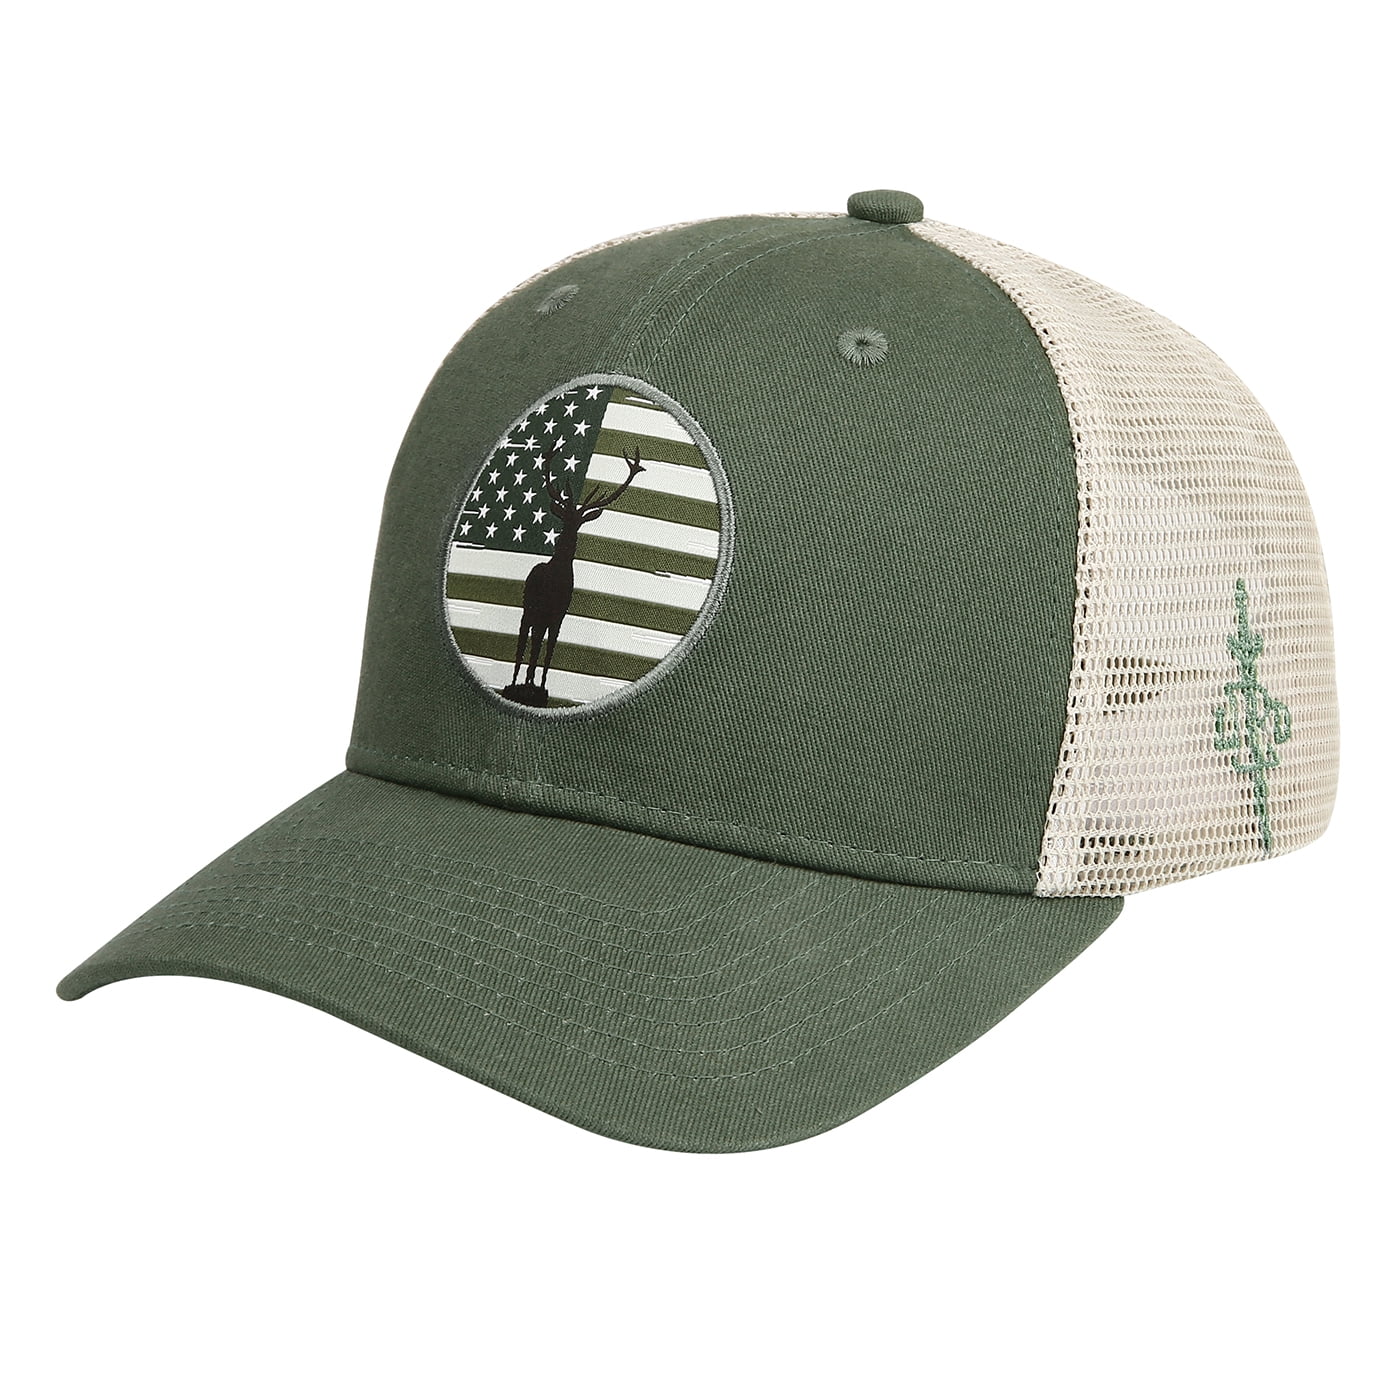 LRD Men Trucker Hat Adjustable Snapback Mesh Baseball Cap